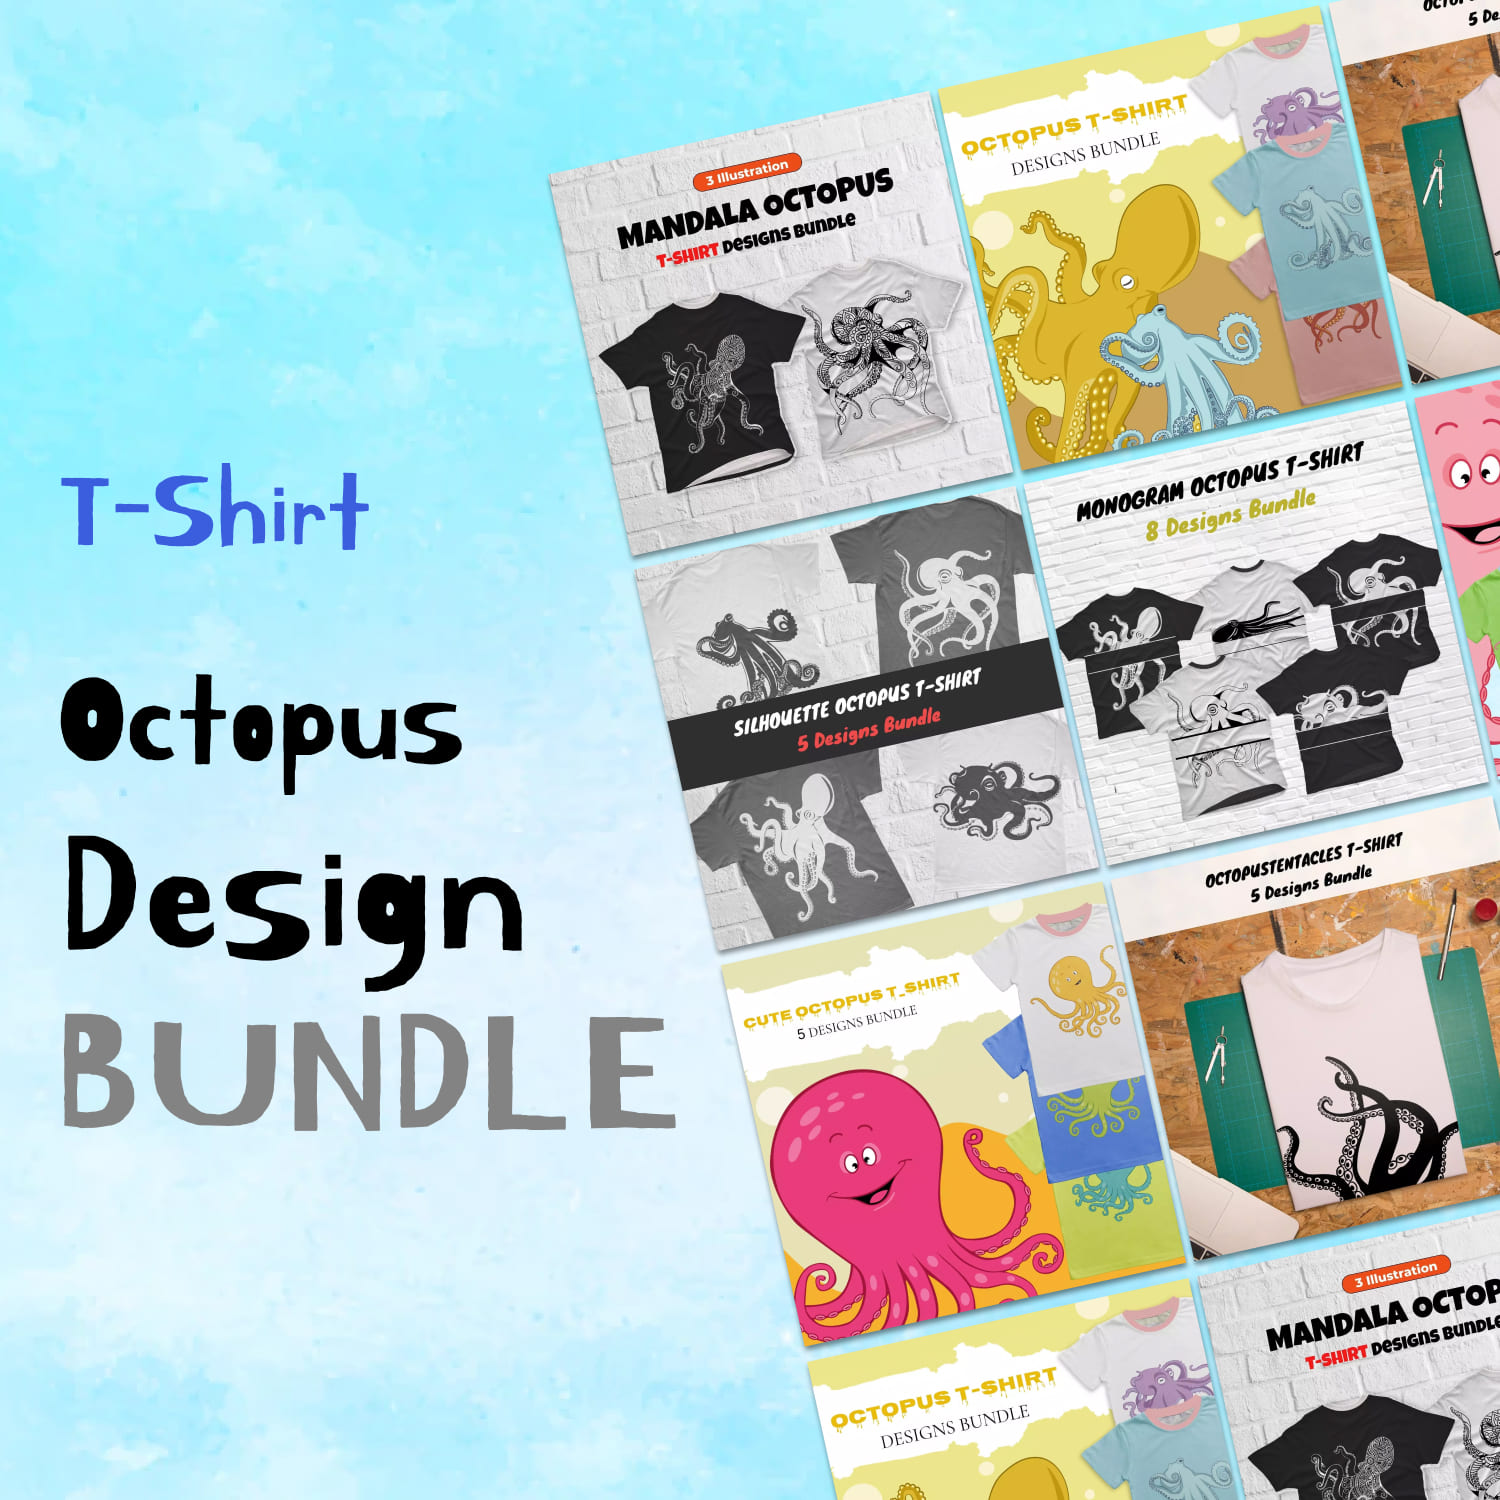 Оctopus T-shirt Design Images Bundle.